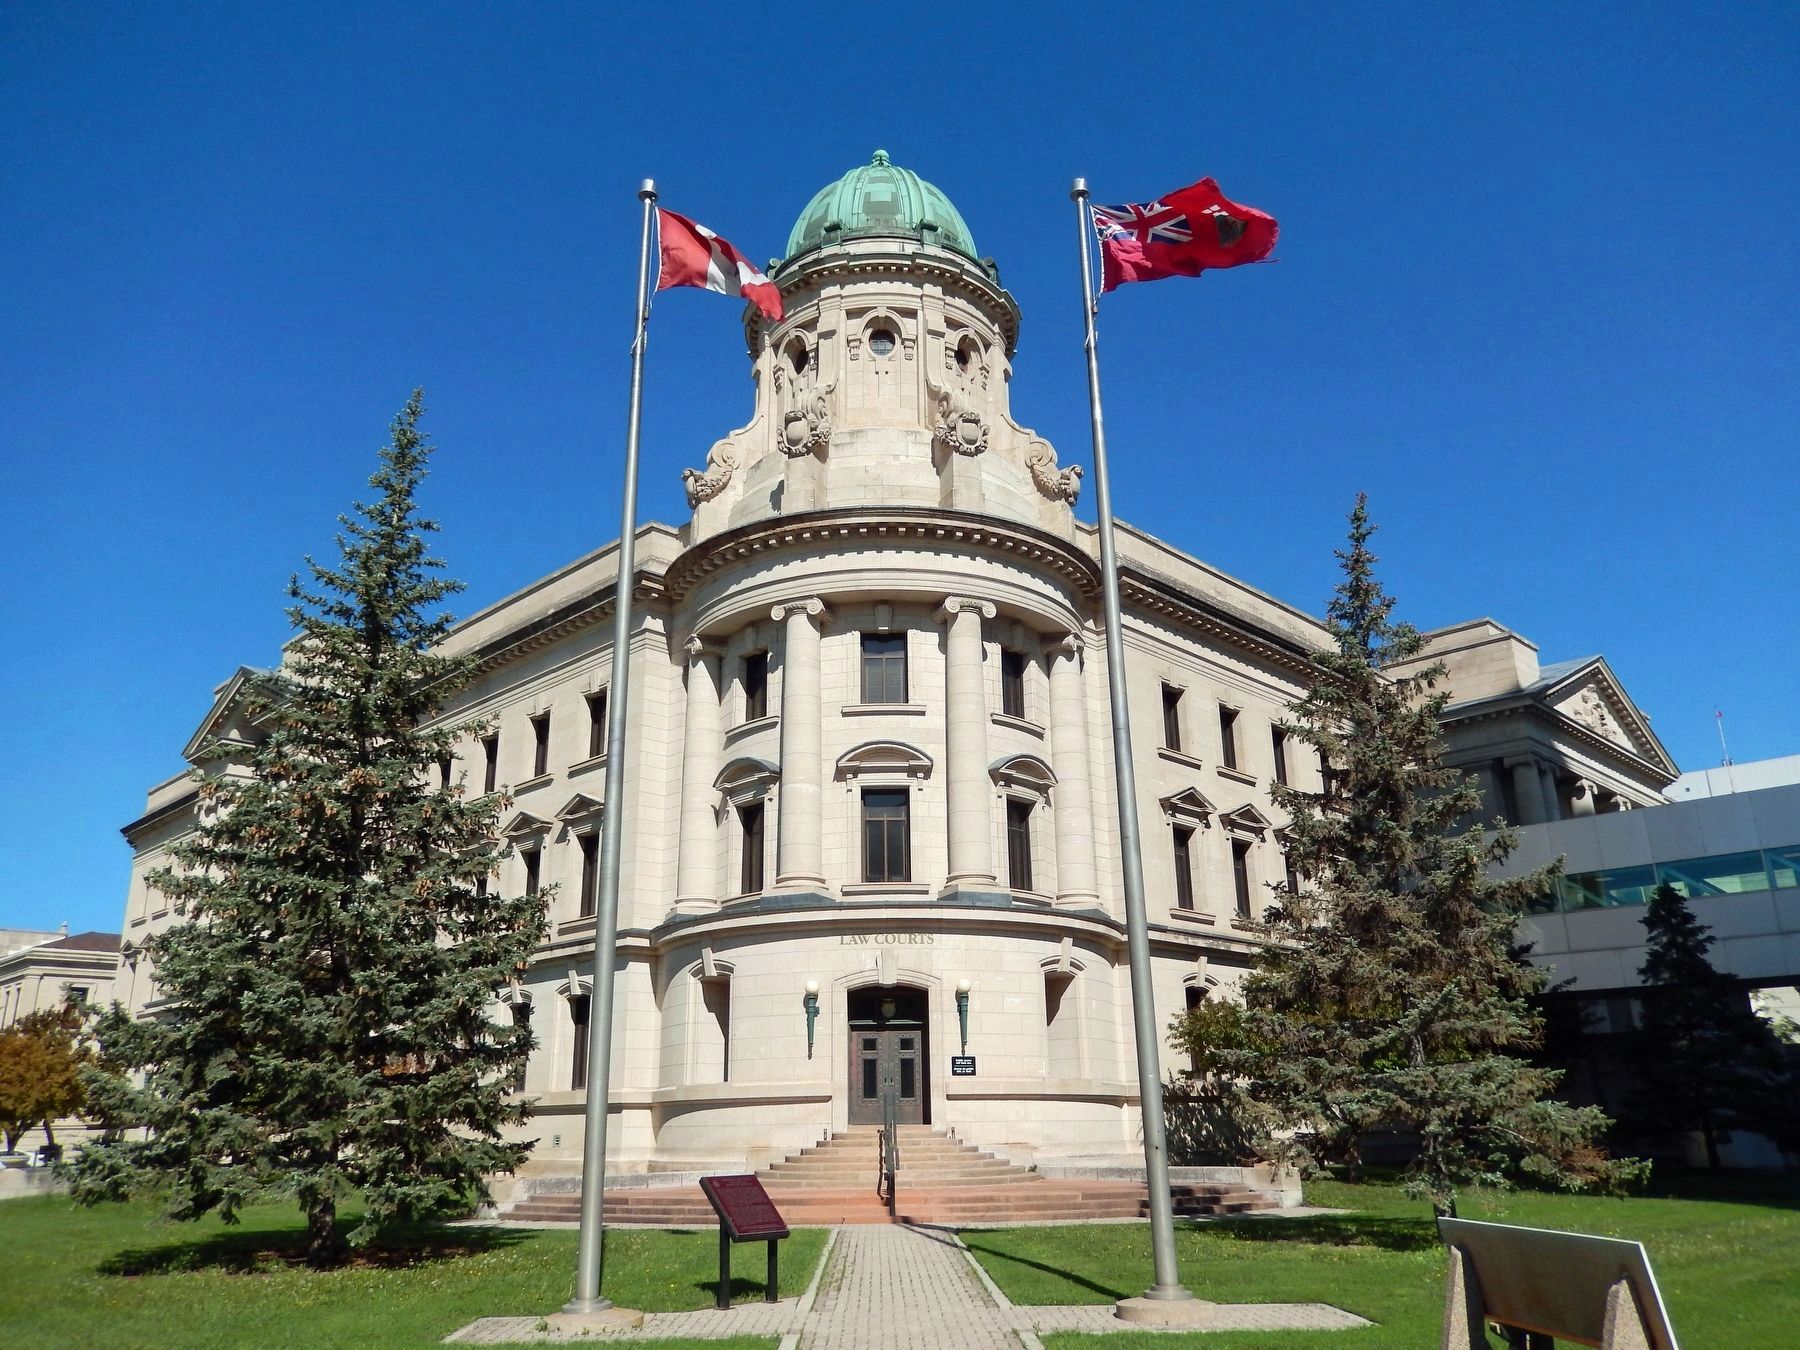 Winnipeg Law Courts / Le Palais de Justice de Winnipeg image, Touch for more information